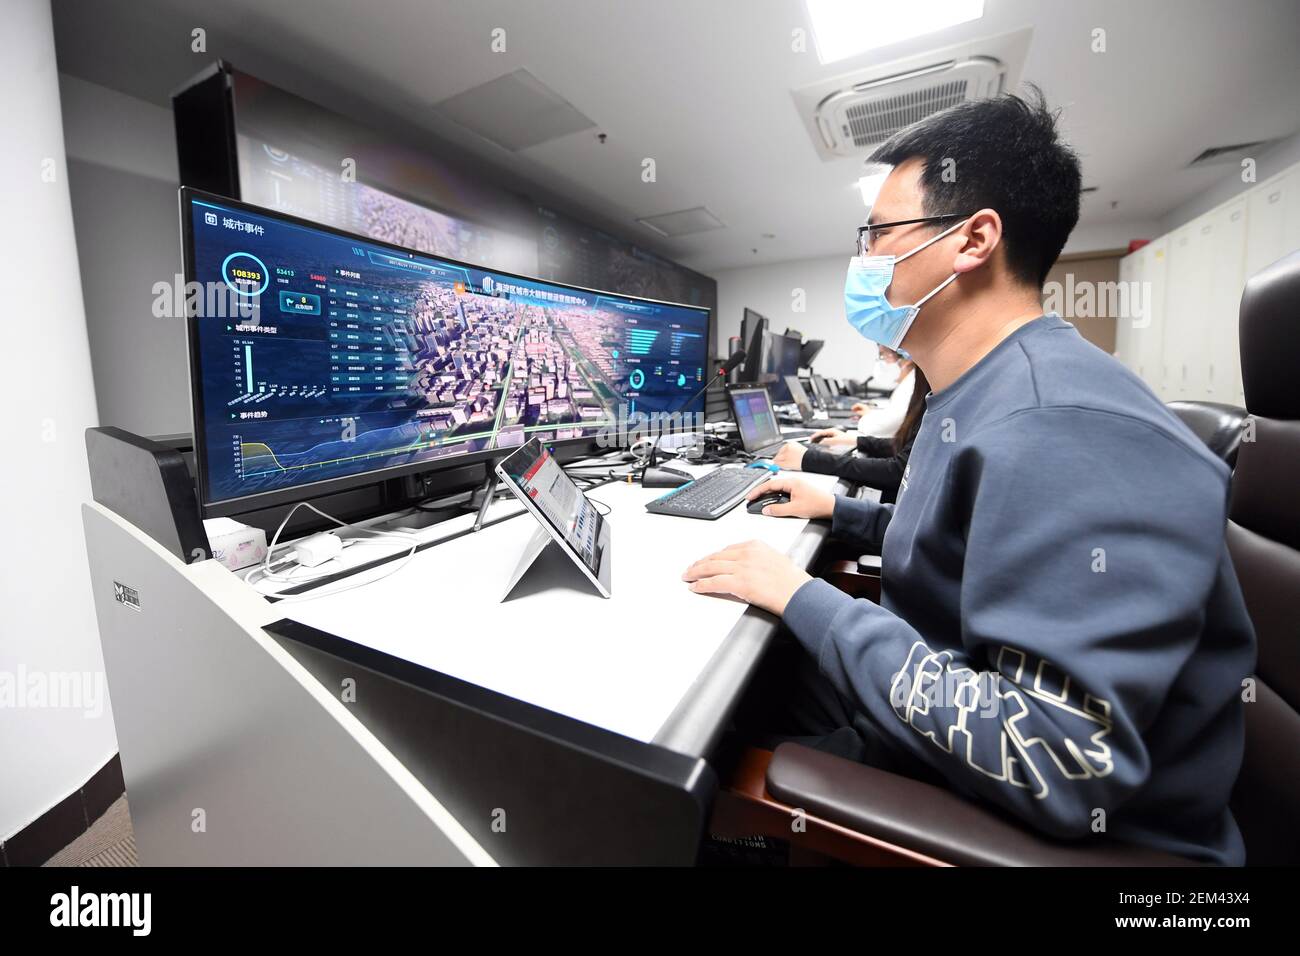 Pechino, Cina. 24 Feb 2021. Un membro dello staff lavora presso l'Intelligent Operations Command Center di Haidian, Pechino, capitale della Cina, il 24 febbraio 2021. Mercoledì è stato messo in uso il centro di comando delle operazioni intelligenti del distretto di Haidian. Coprendo un'area di 1,200 metri quadrati, il centro di comando può essere applicato in risposta e smaltimento di emergenza, supporto per grandi eventi, ecc. Credit: Ren Chao/Xinhua/Alamy Live News Foto Stock